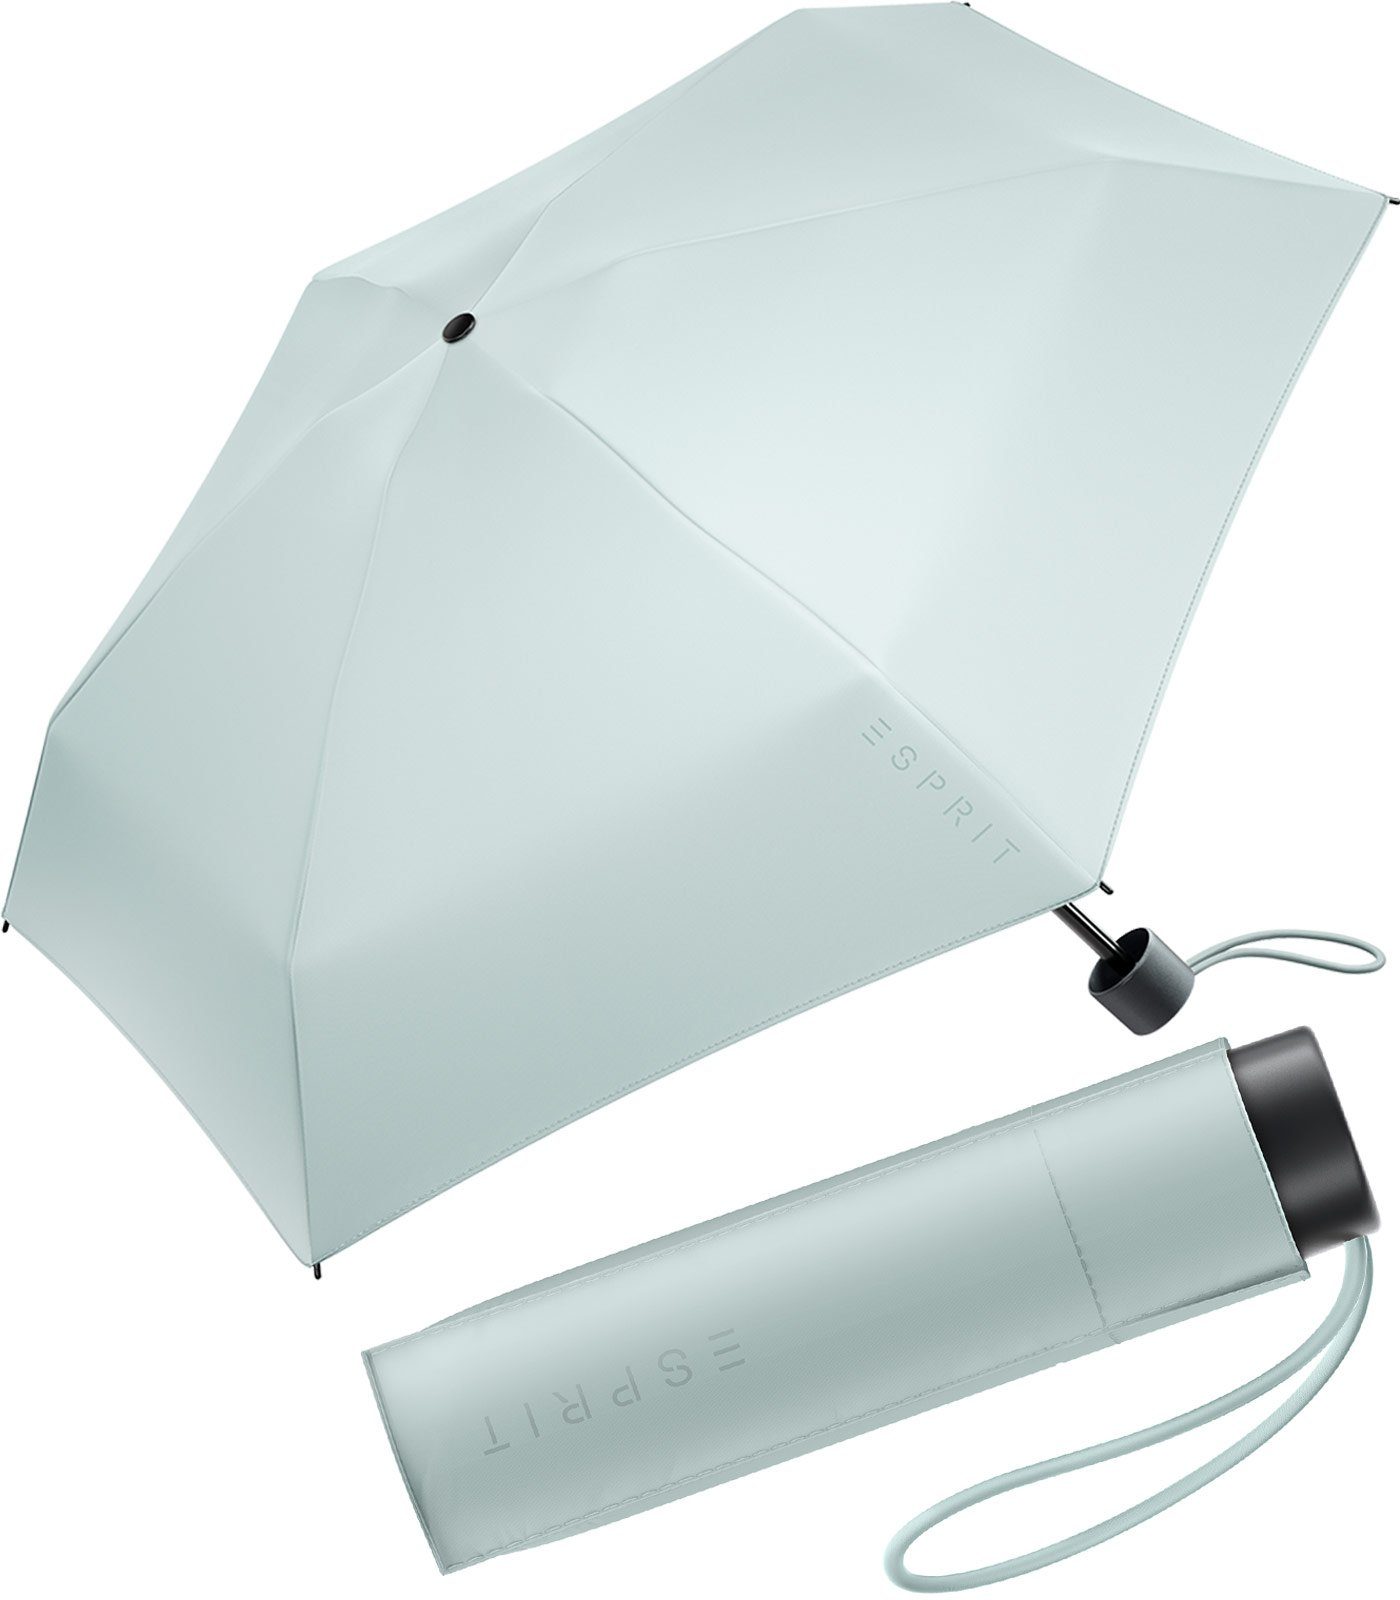 Esprit Taschenregenschirm Damen Super Mini Regenschirm Petito FJ 2022, winzig klein, in den neuen Trendfarben graublau | Taschenschirme